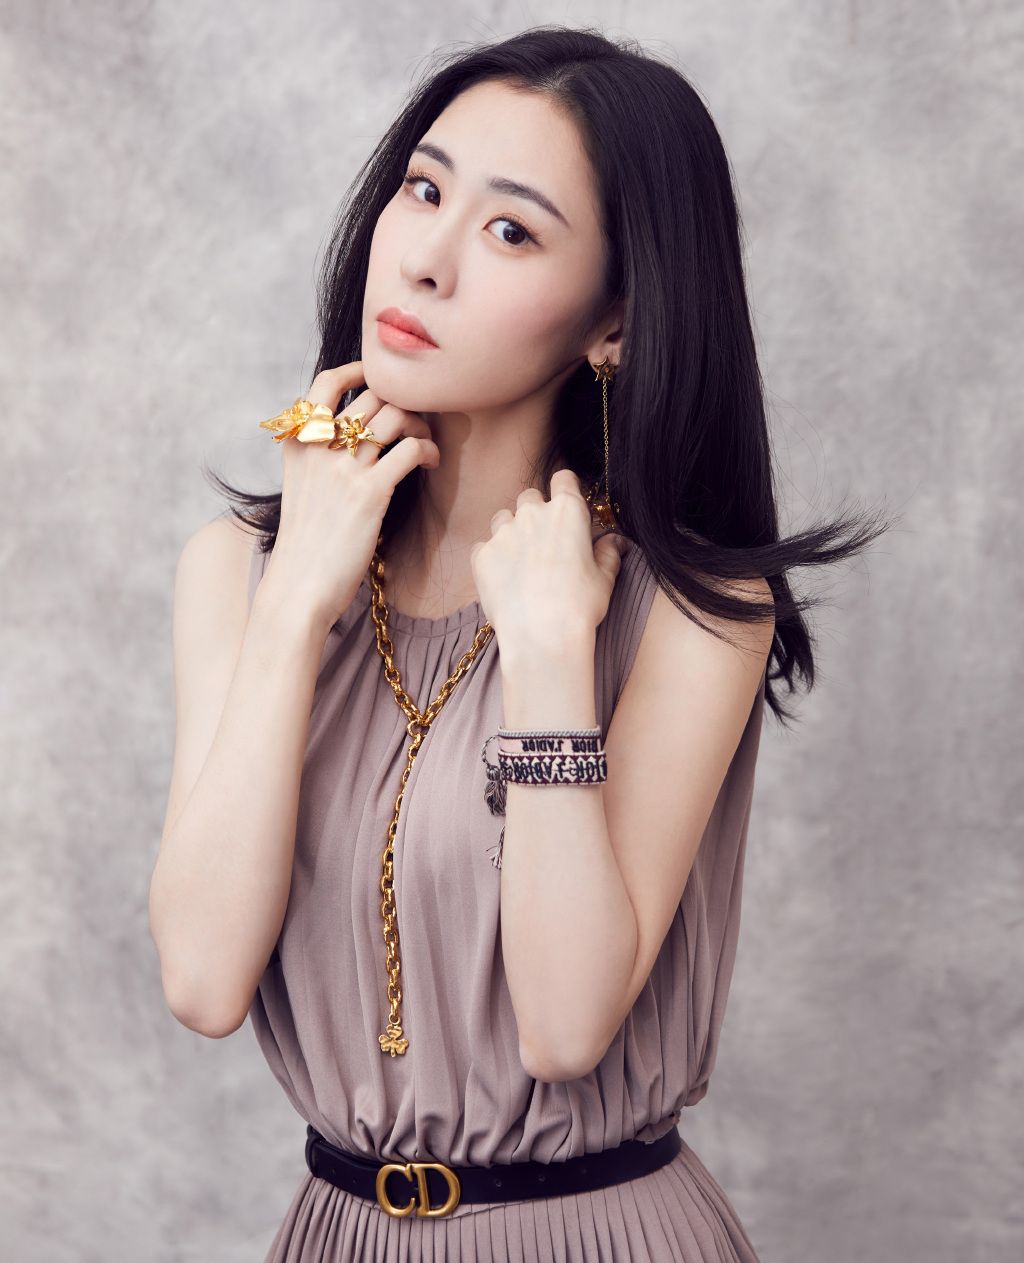 中国最美女歌手_综合图库 - 动态图库网